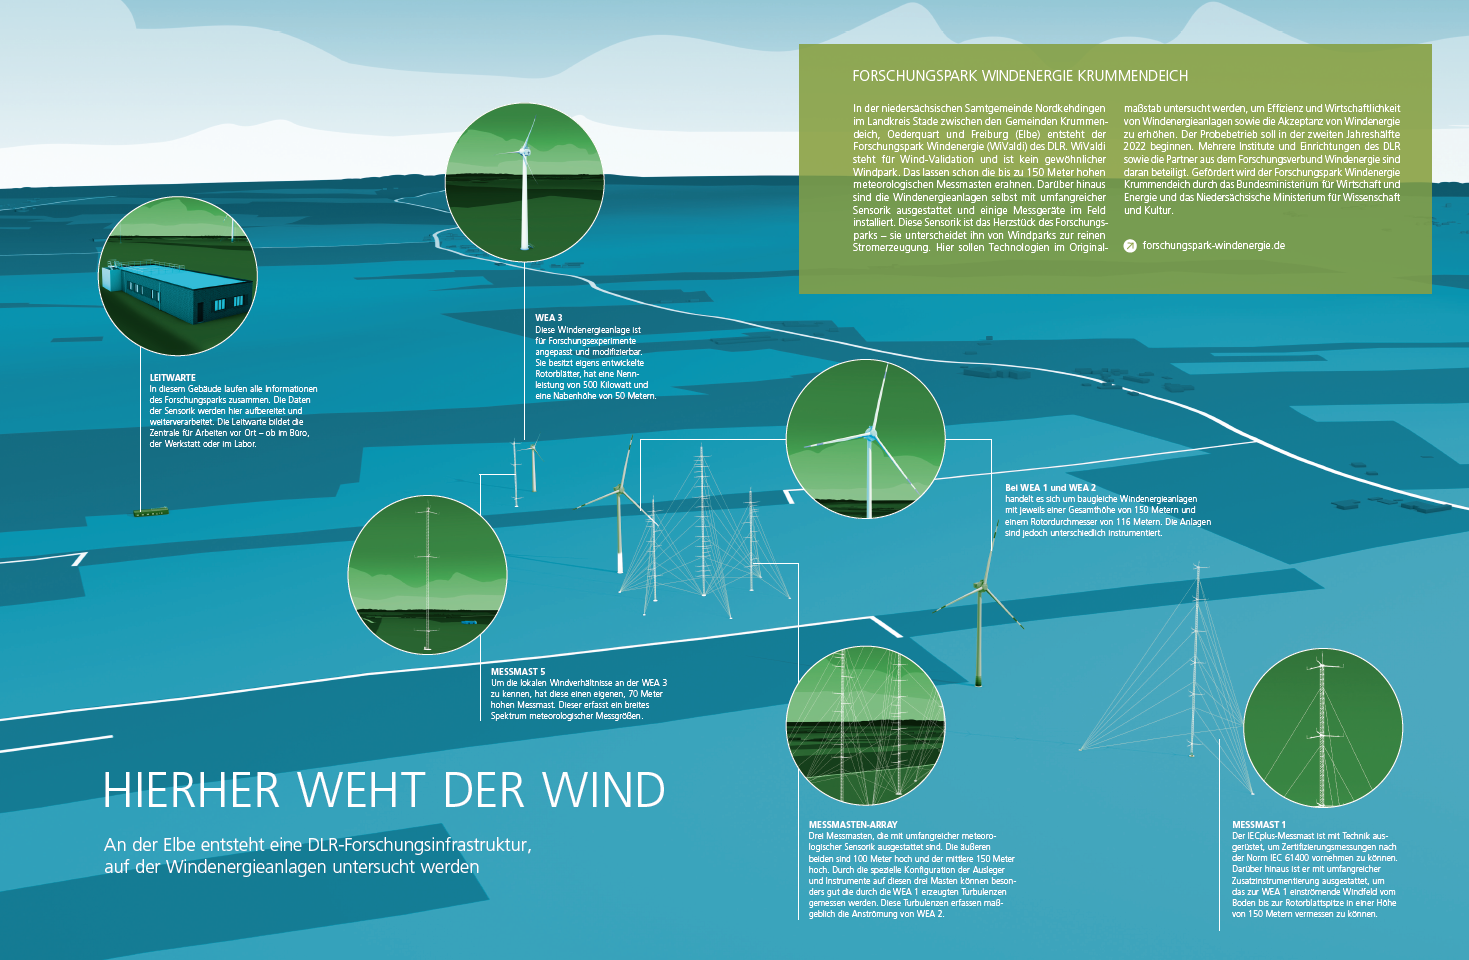 Die Infografik zeigt den schematischen Aufbau des Forschungswindparks, der in Krummendeich entsteht.